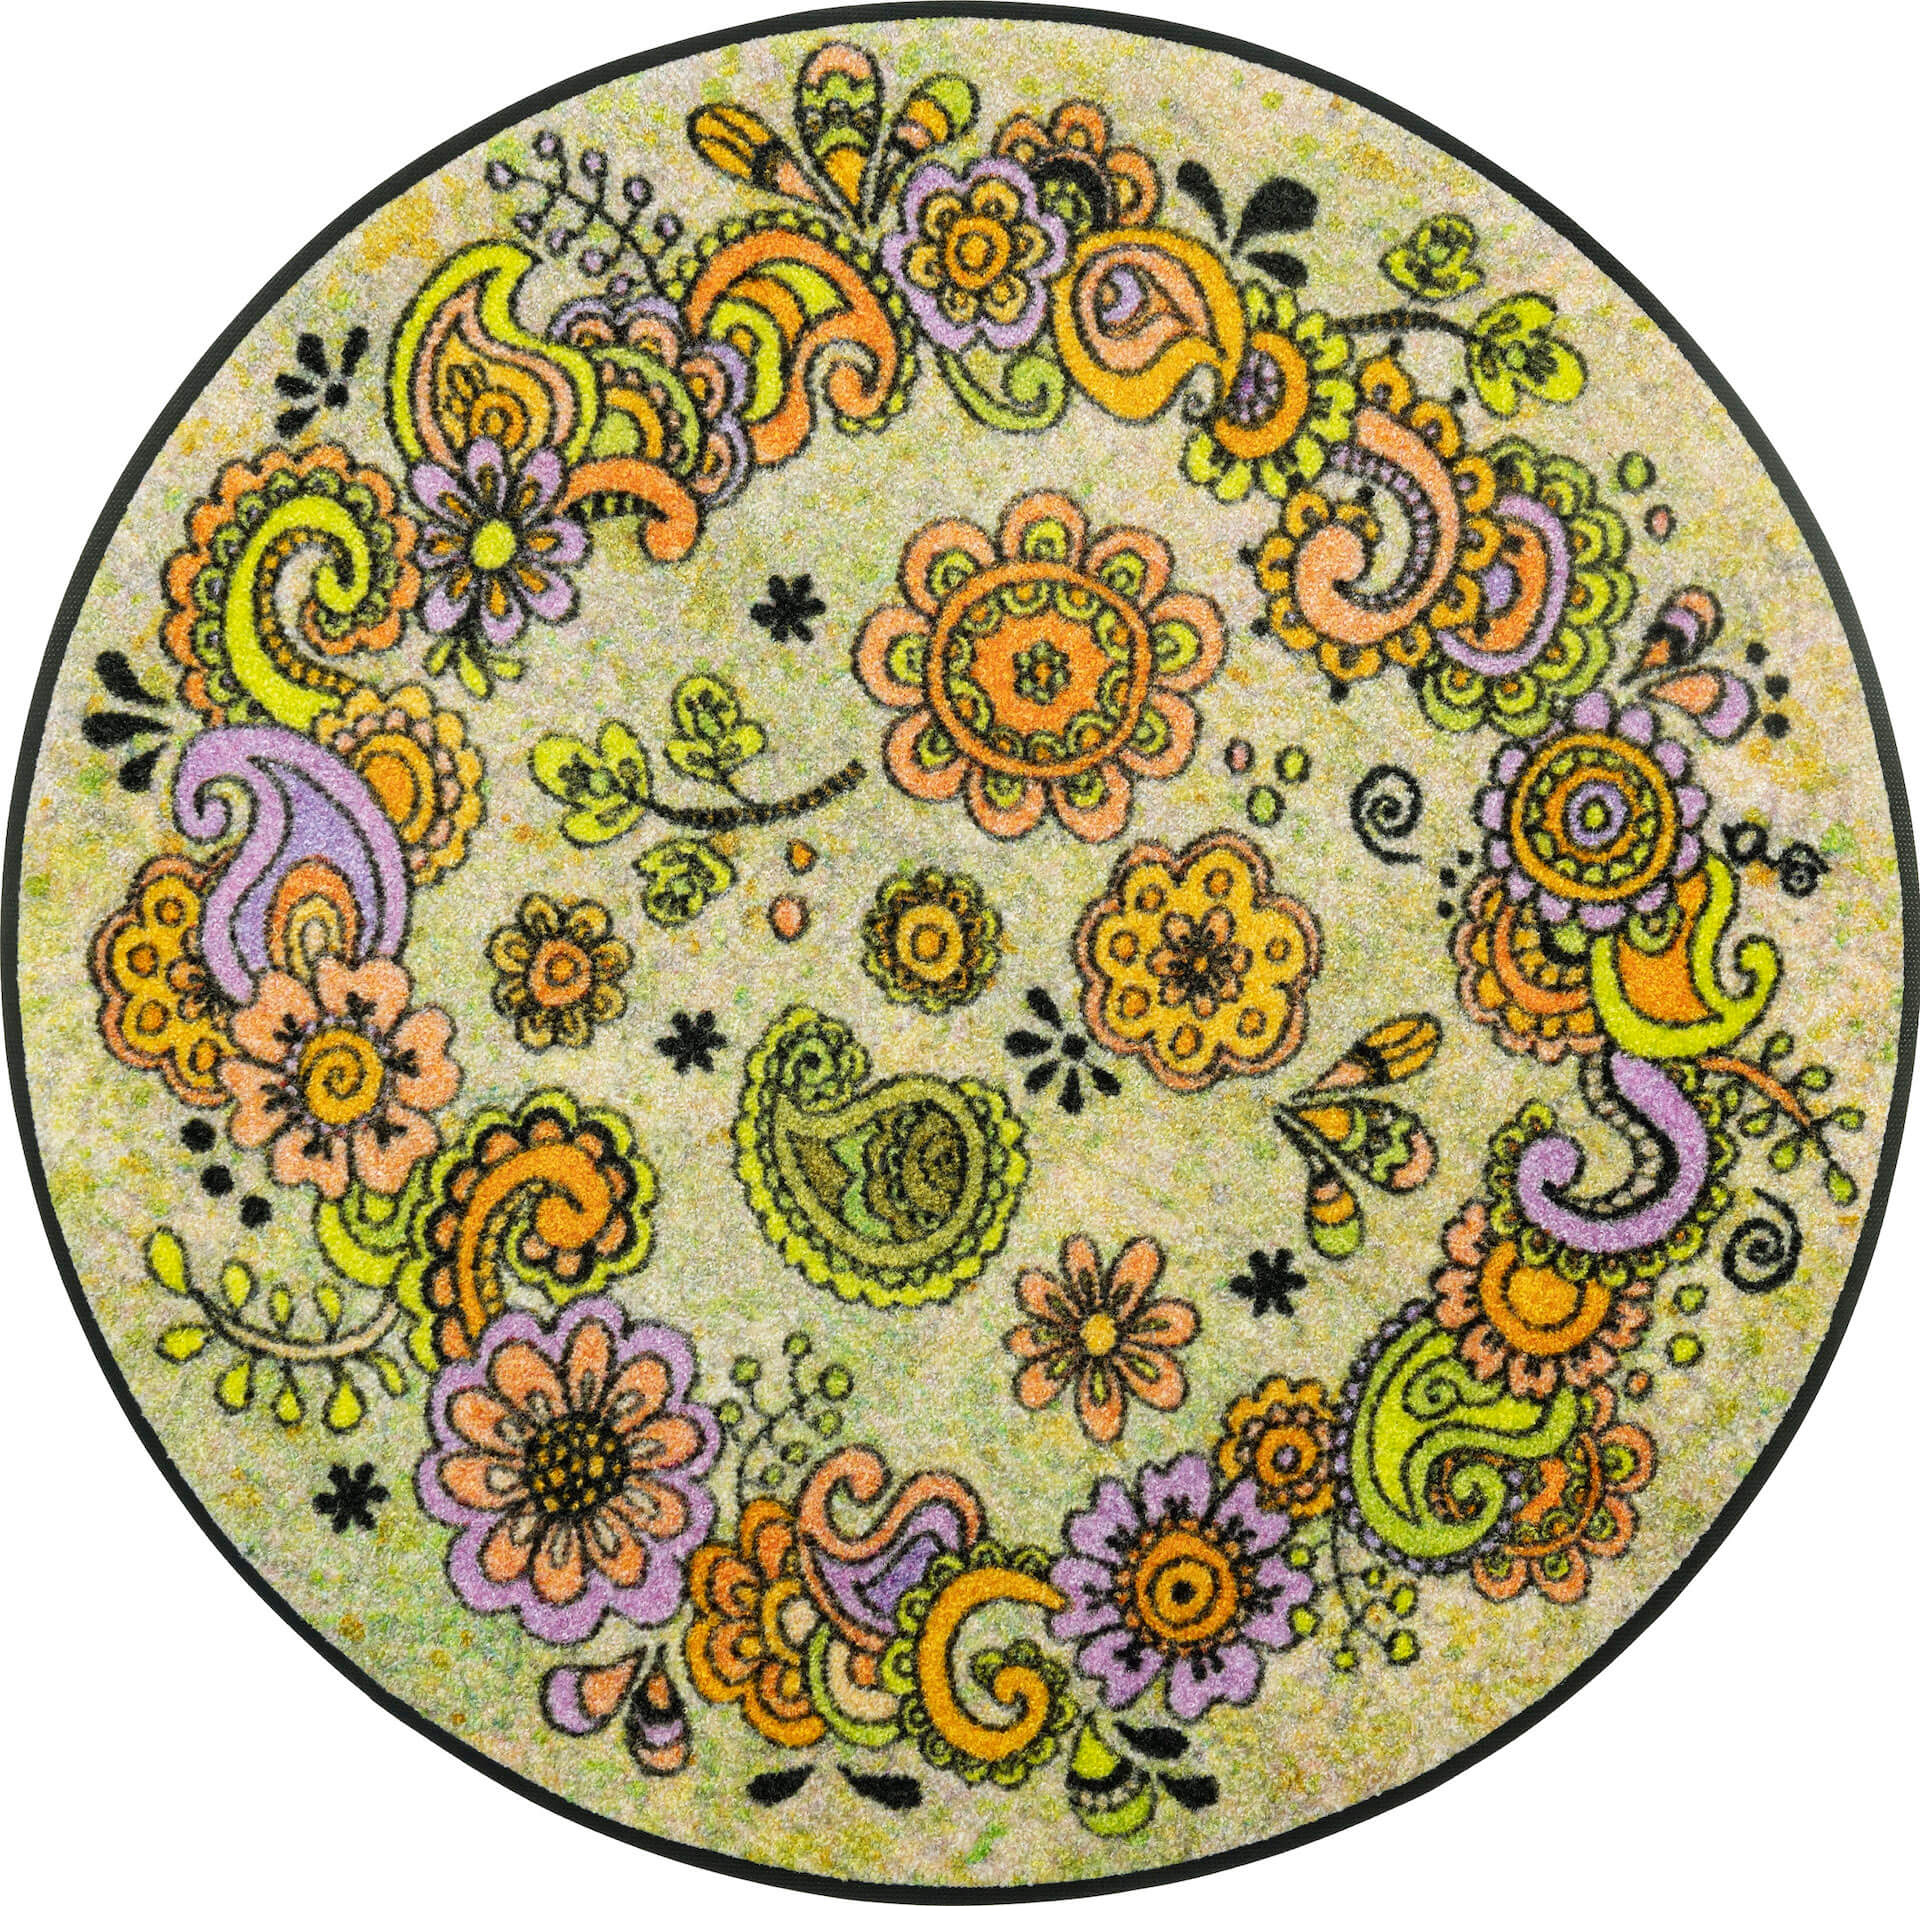 Fußmatte Happy Flowers, Wash & Dry Design, 085 x 085 cm, mehrfarbig, Draufsicht